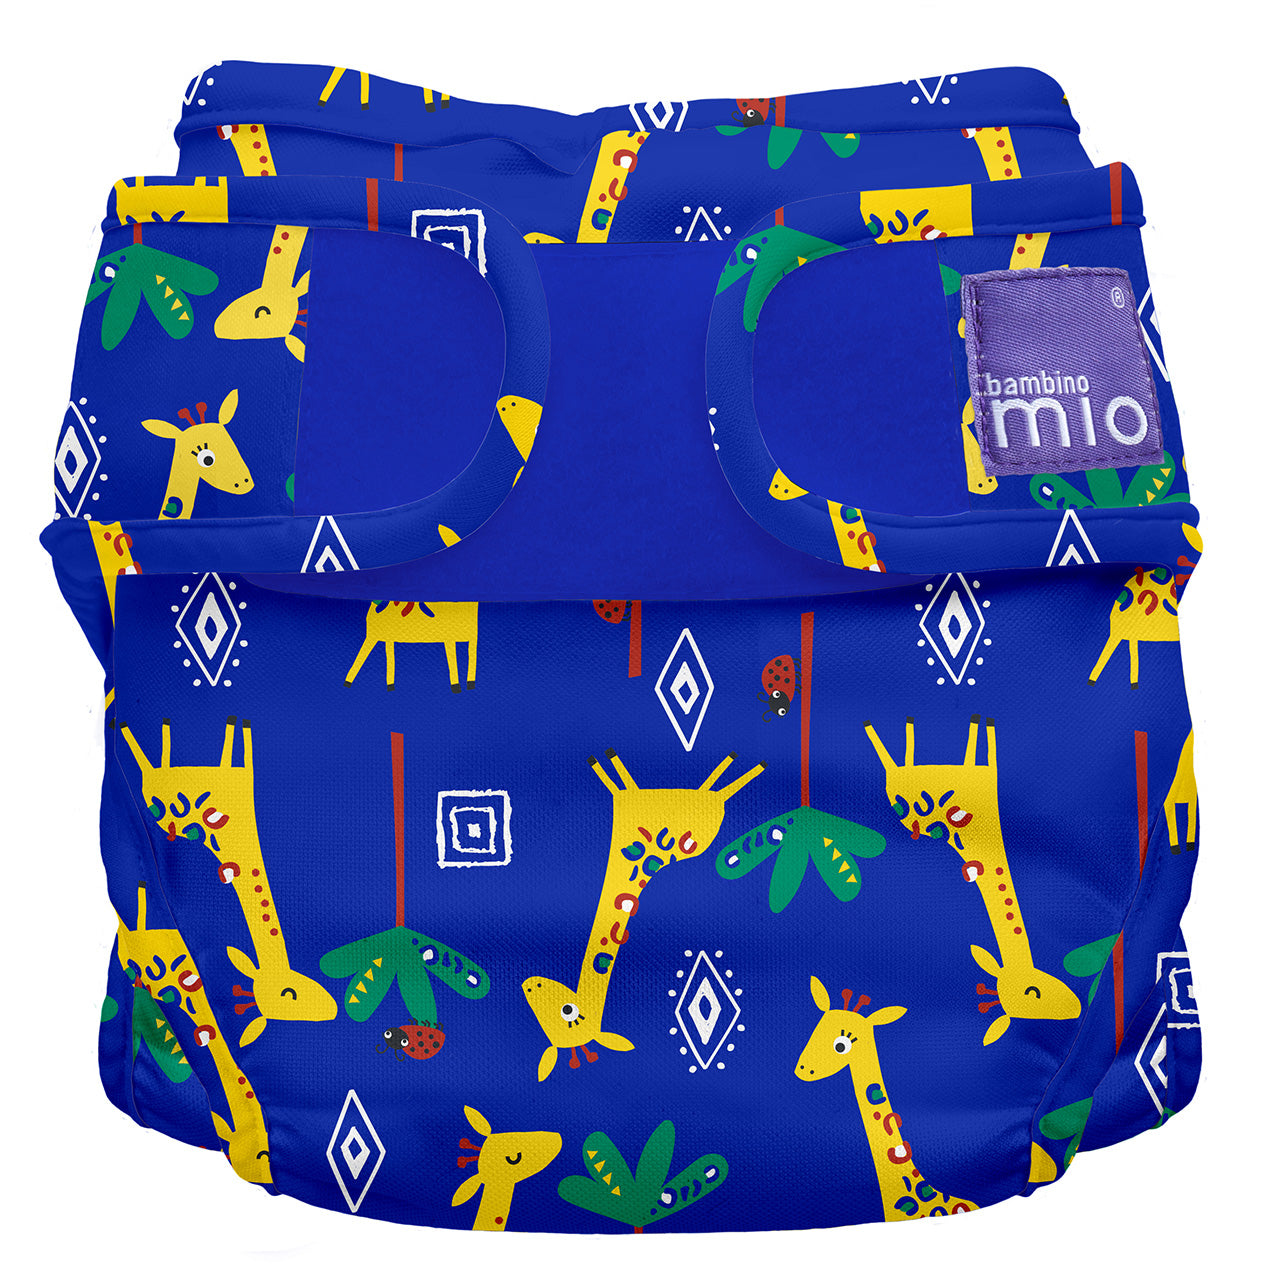 bambino mio reusable nappy cover blue with giraffe